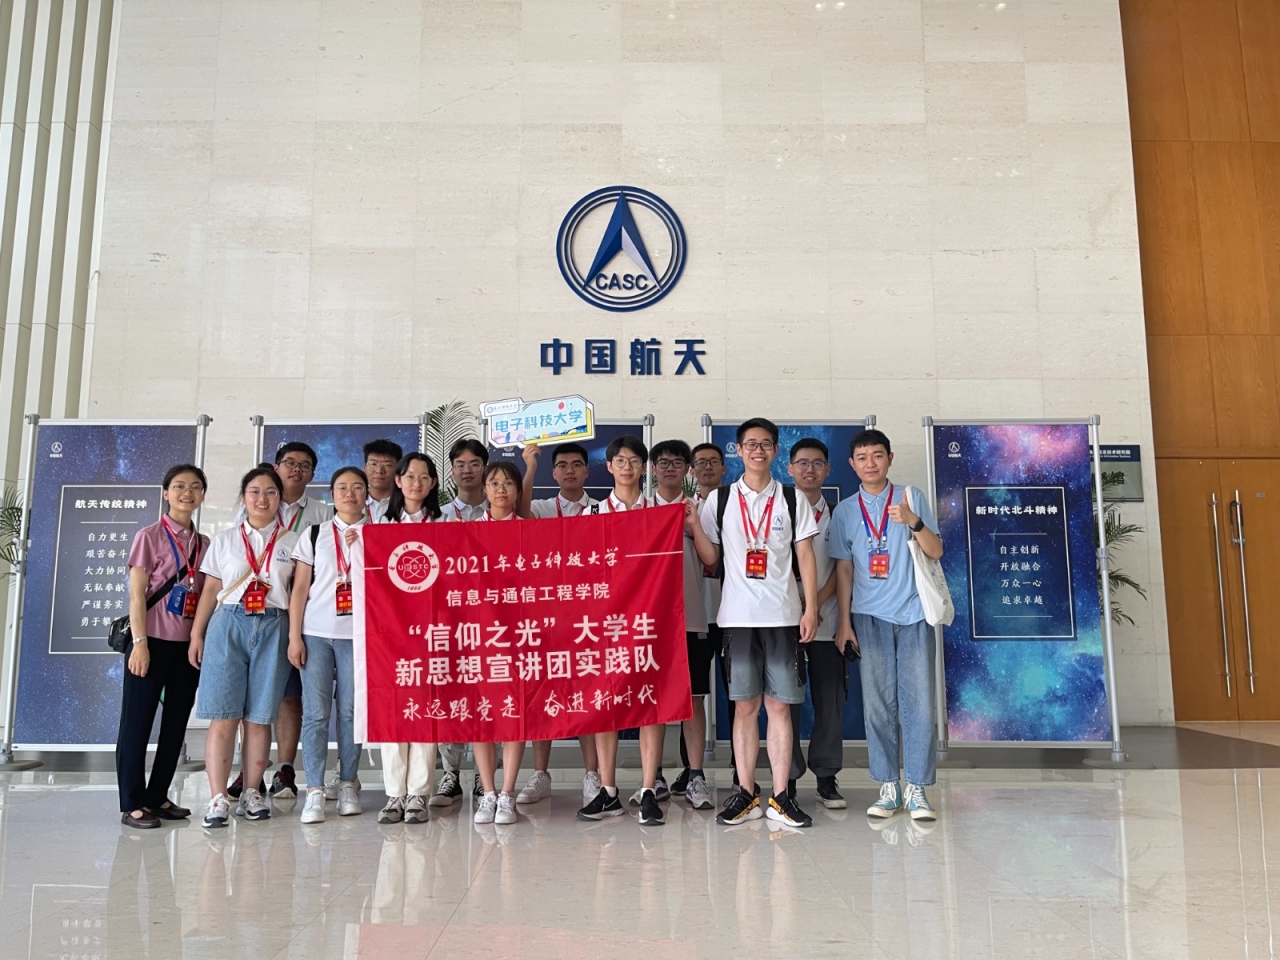 西安小组队员走进中国航天科技集团公司五院西安分院考察学习.jpg